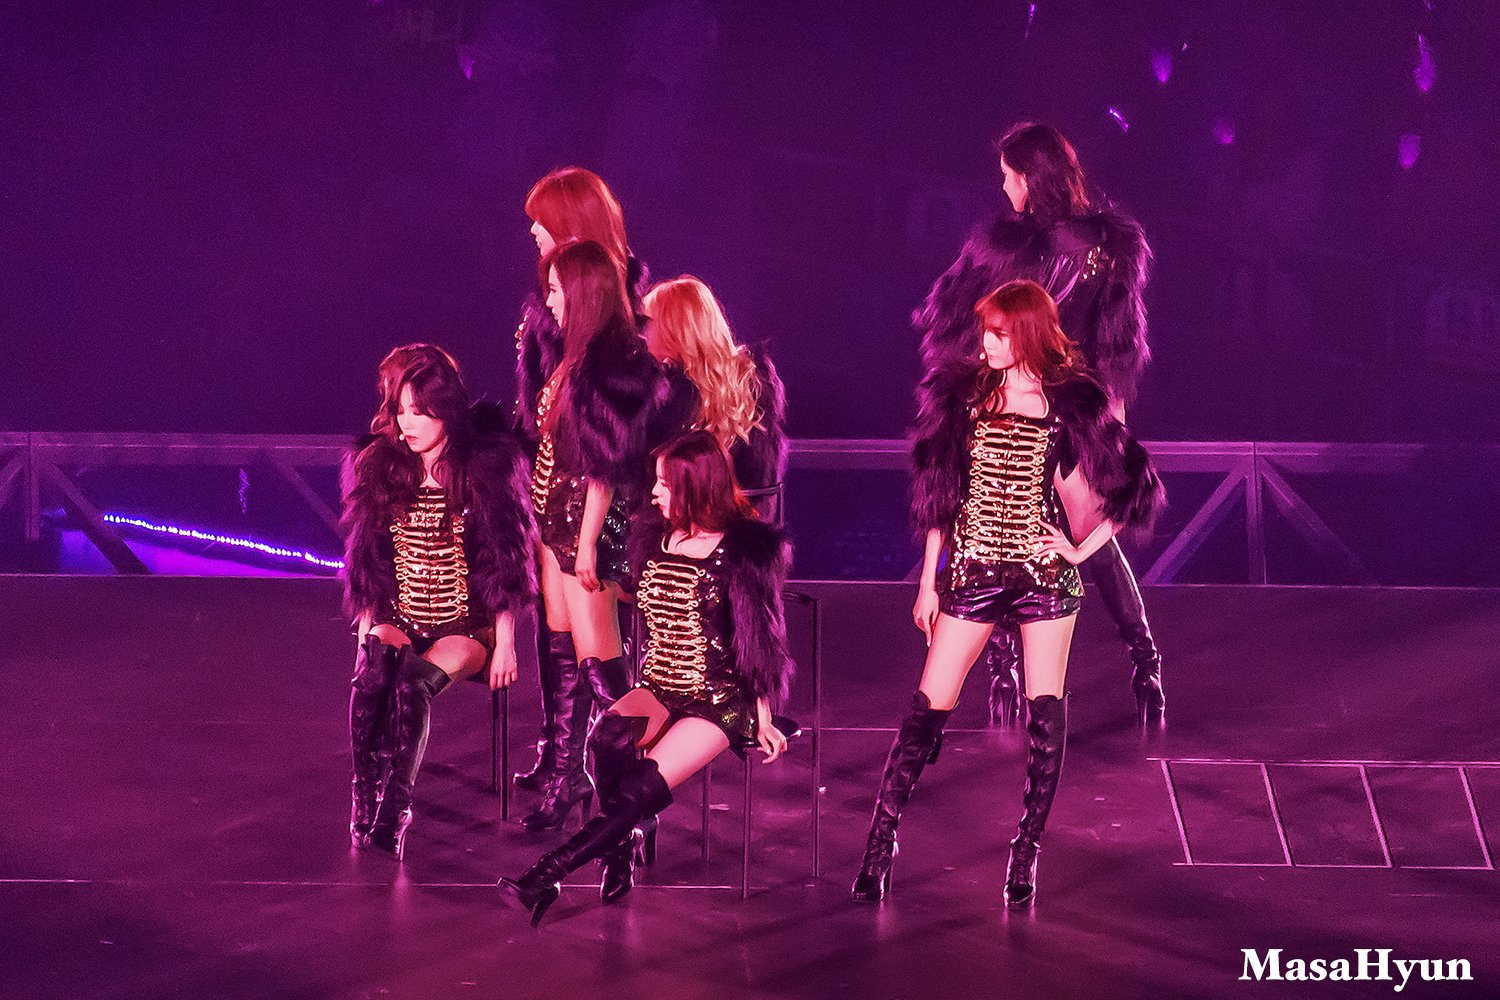 [PIC][09-12-2014]Hình ảnh mới nhất từ "GIRLS' GENERATION THE BEST LIVE AT TOKYO DOME" của SNSD  - Page 3 X6S45eSl5c-3000x3000